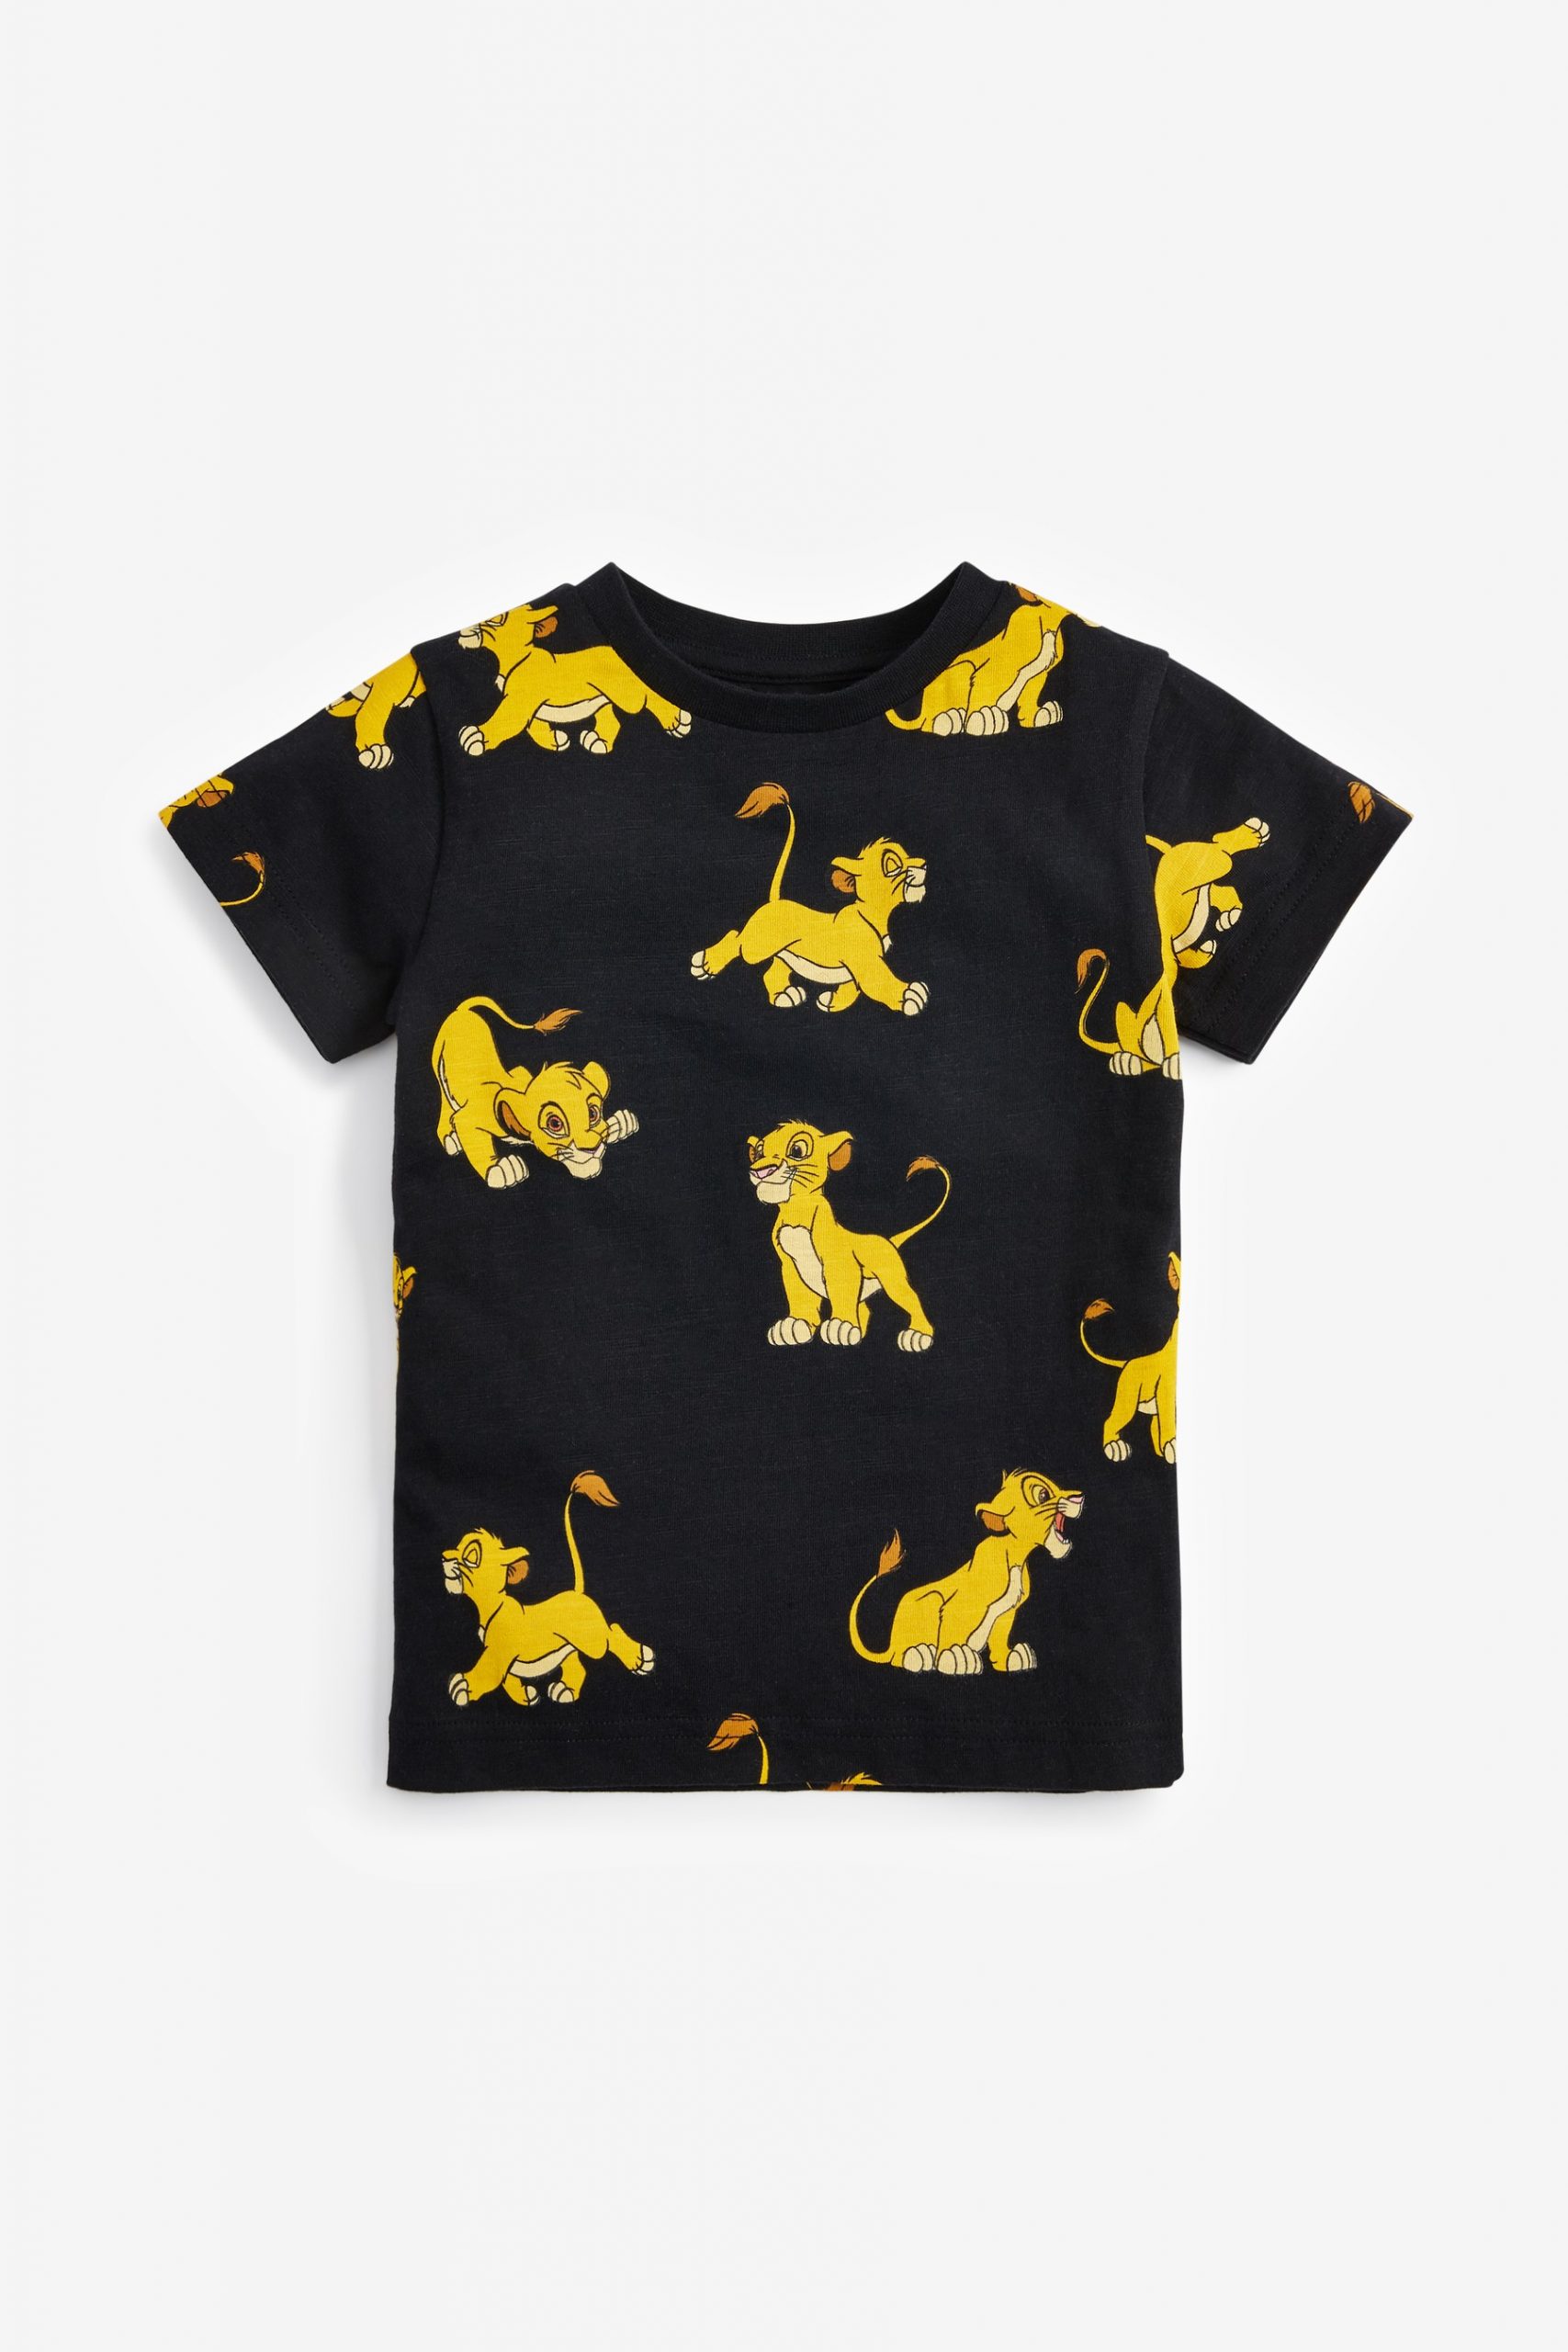 lion king shirt